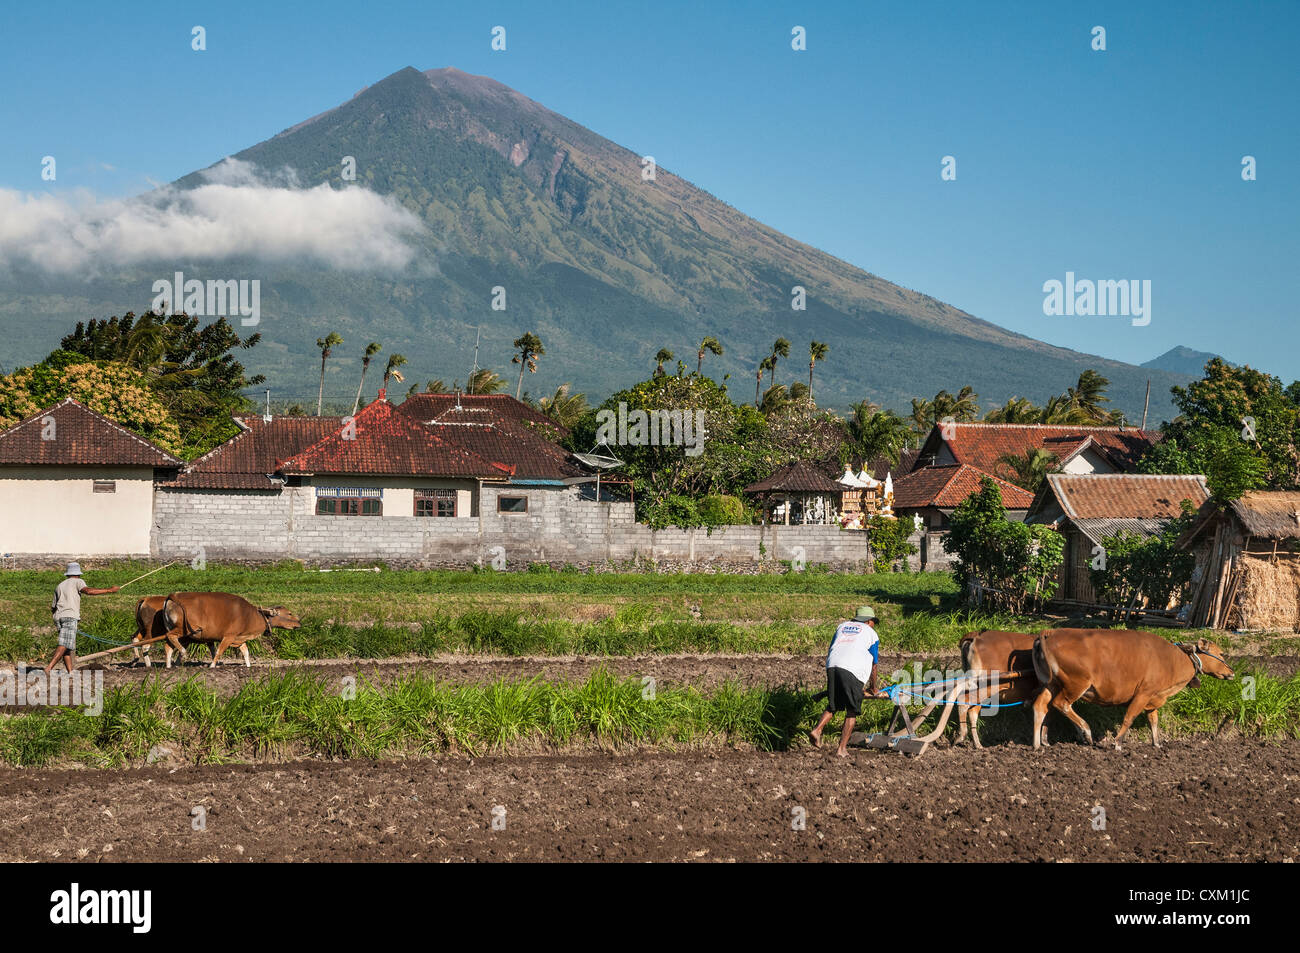 Arare i campi nei pressi di Amed con Gunung Agung vulcano sullo sfondo, Bali Orientale, Indonesia. Foto Stock